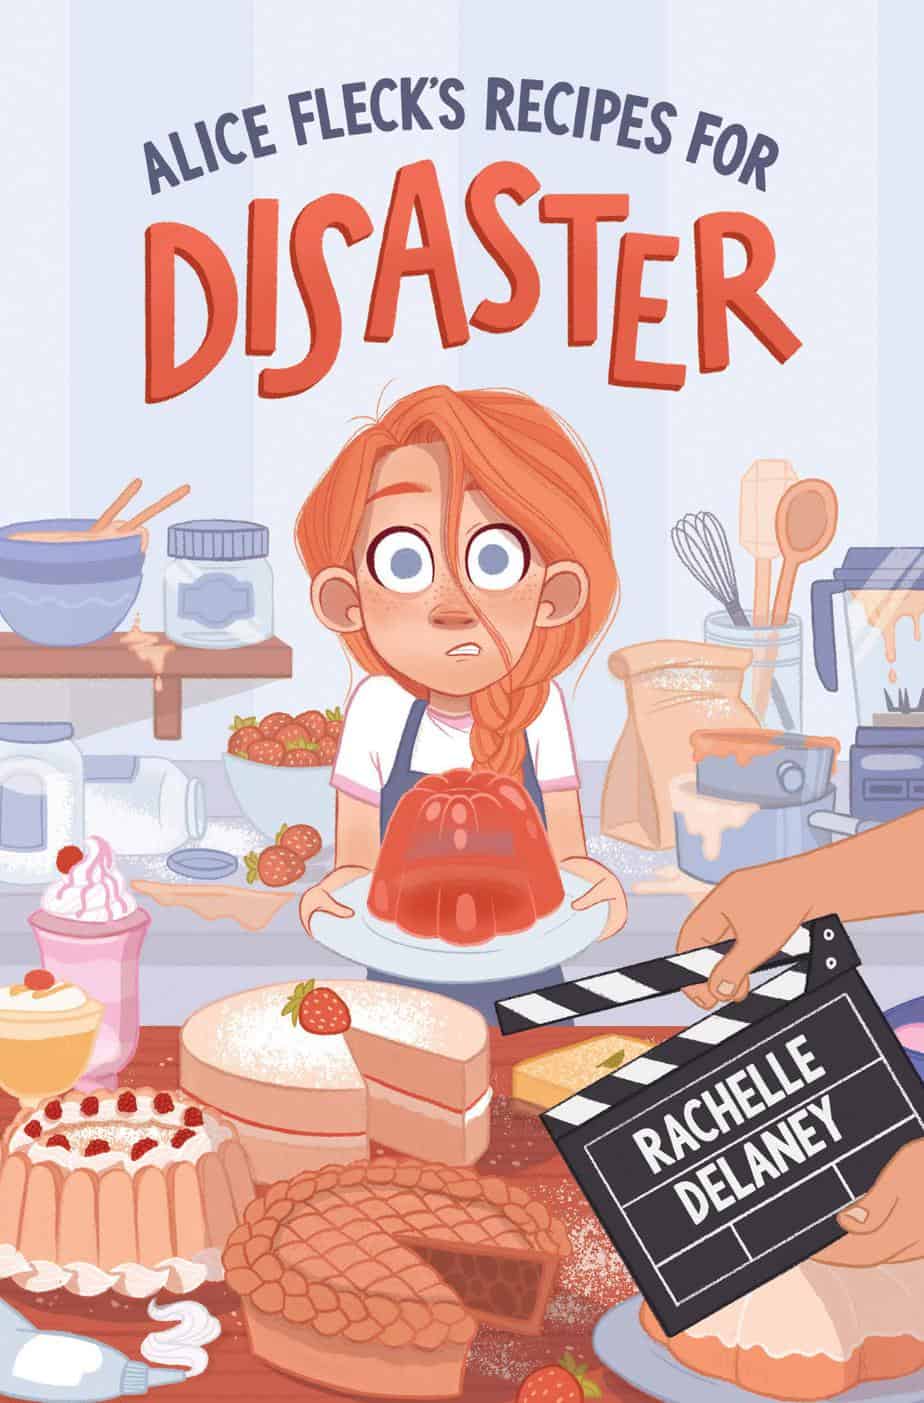 Alice Flecks' Recipes for Disaster by Rachelle Delaney